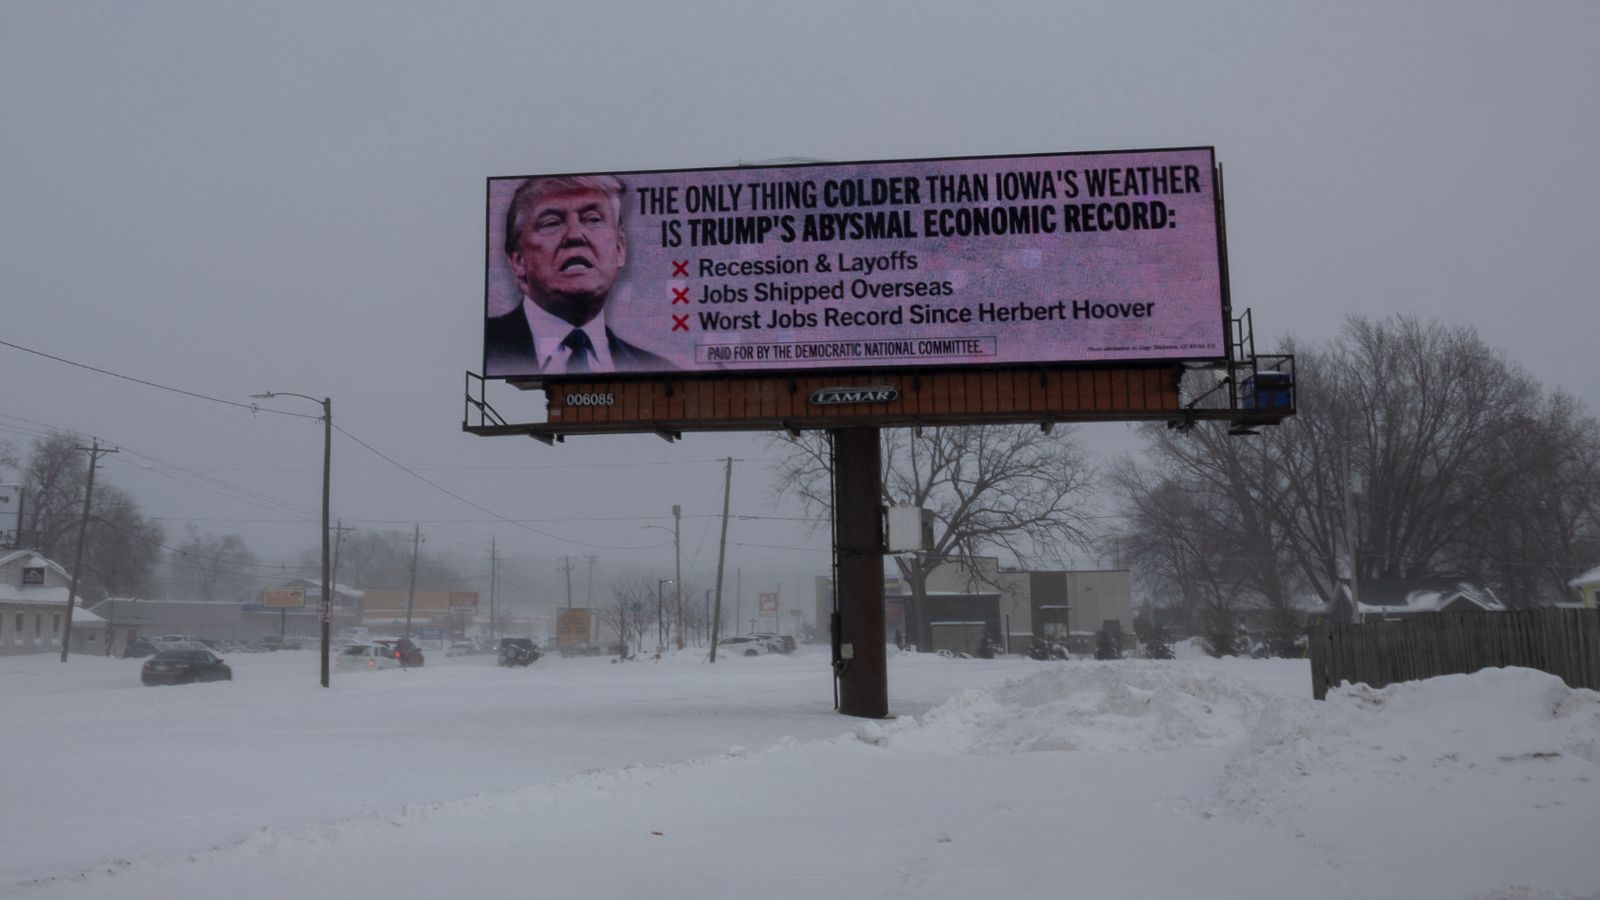 Събрания в Айова: Може да отнеме повече от зимна буря, за да отклони Тръмп от курса, докато републиканците избират своя кандидат за президент